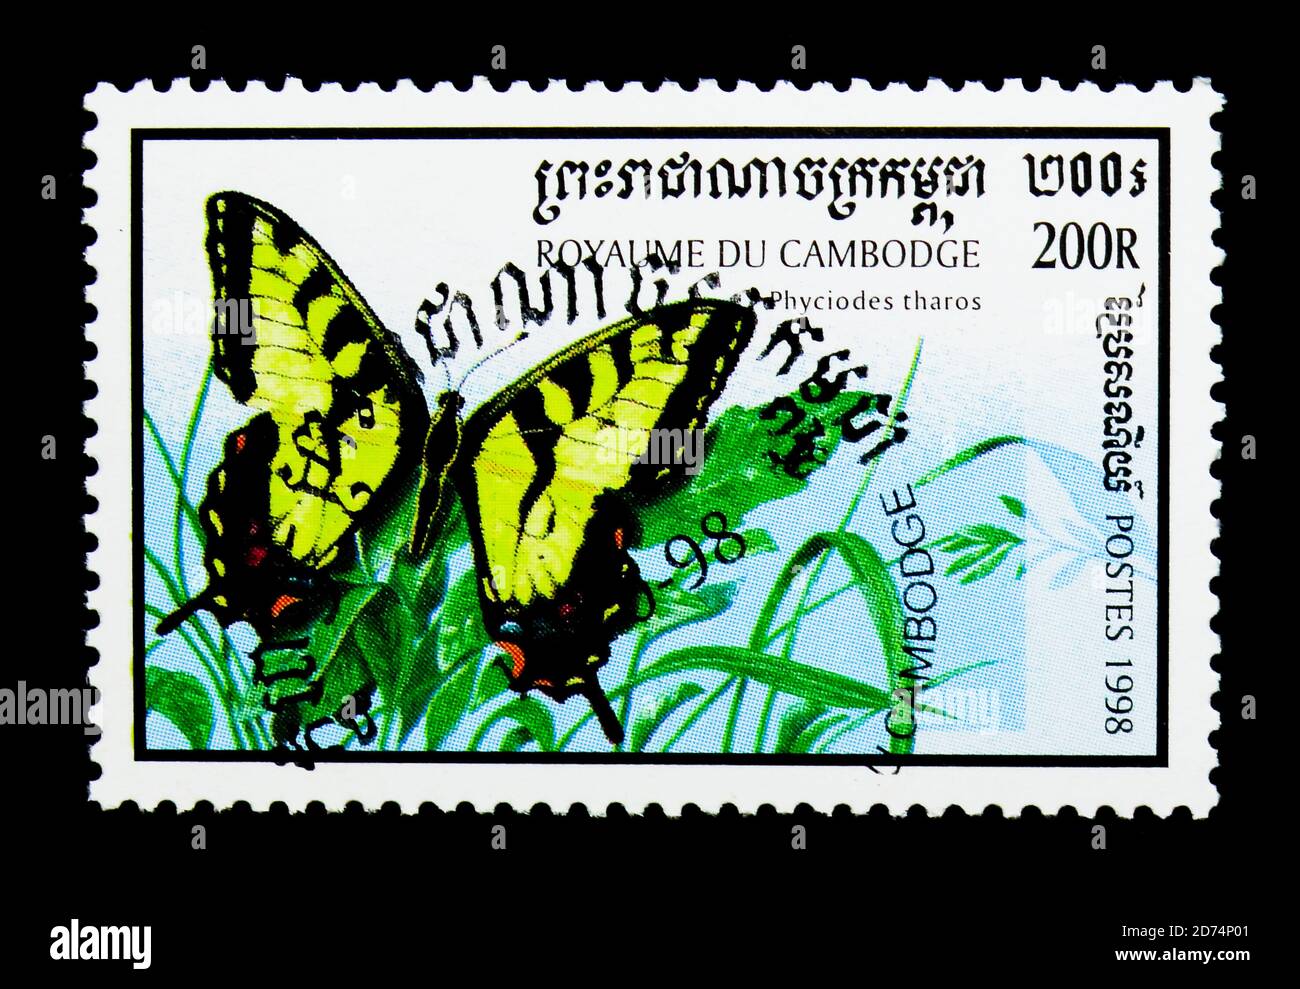 MOSCOU, RUSSIE - le 24 NOVEMBRE 2017 : un timbre imprimé au Cambodge montre la queue de cygne de l'est (Papilio glaucus), la série de papillons, vers 1998 Banque D'Images